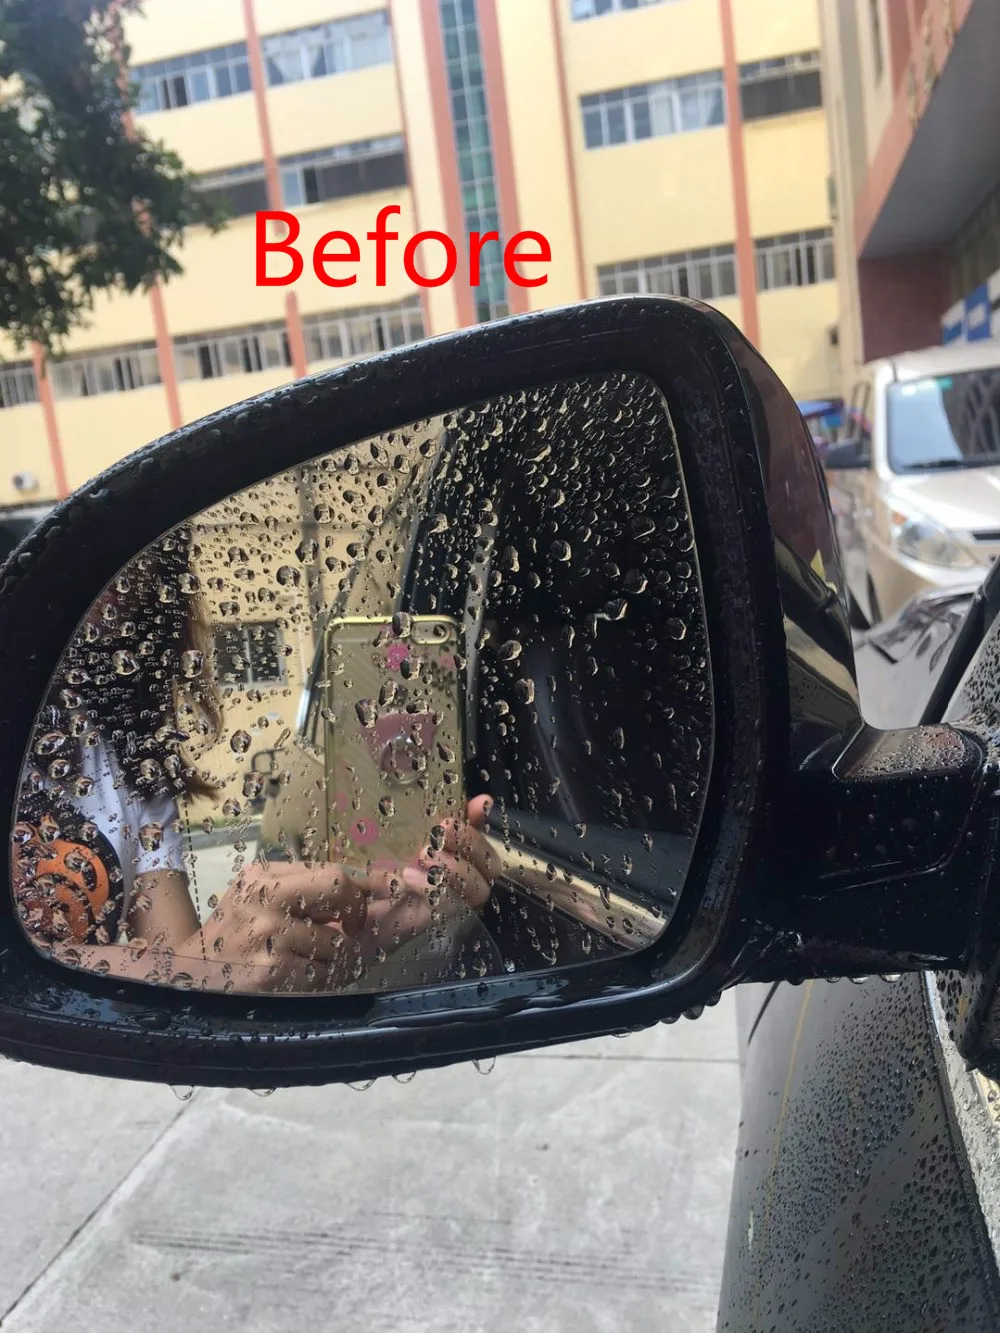 Автомобильная гидрофобная мембрана дождливый день эффективная защита от затопления и дождя для производства пара противотуманных фар автомобиля зеркало заднего вида Водонепроницаемый я